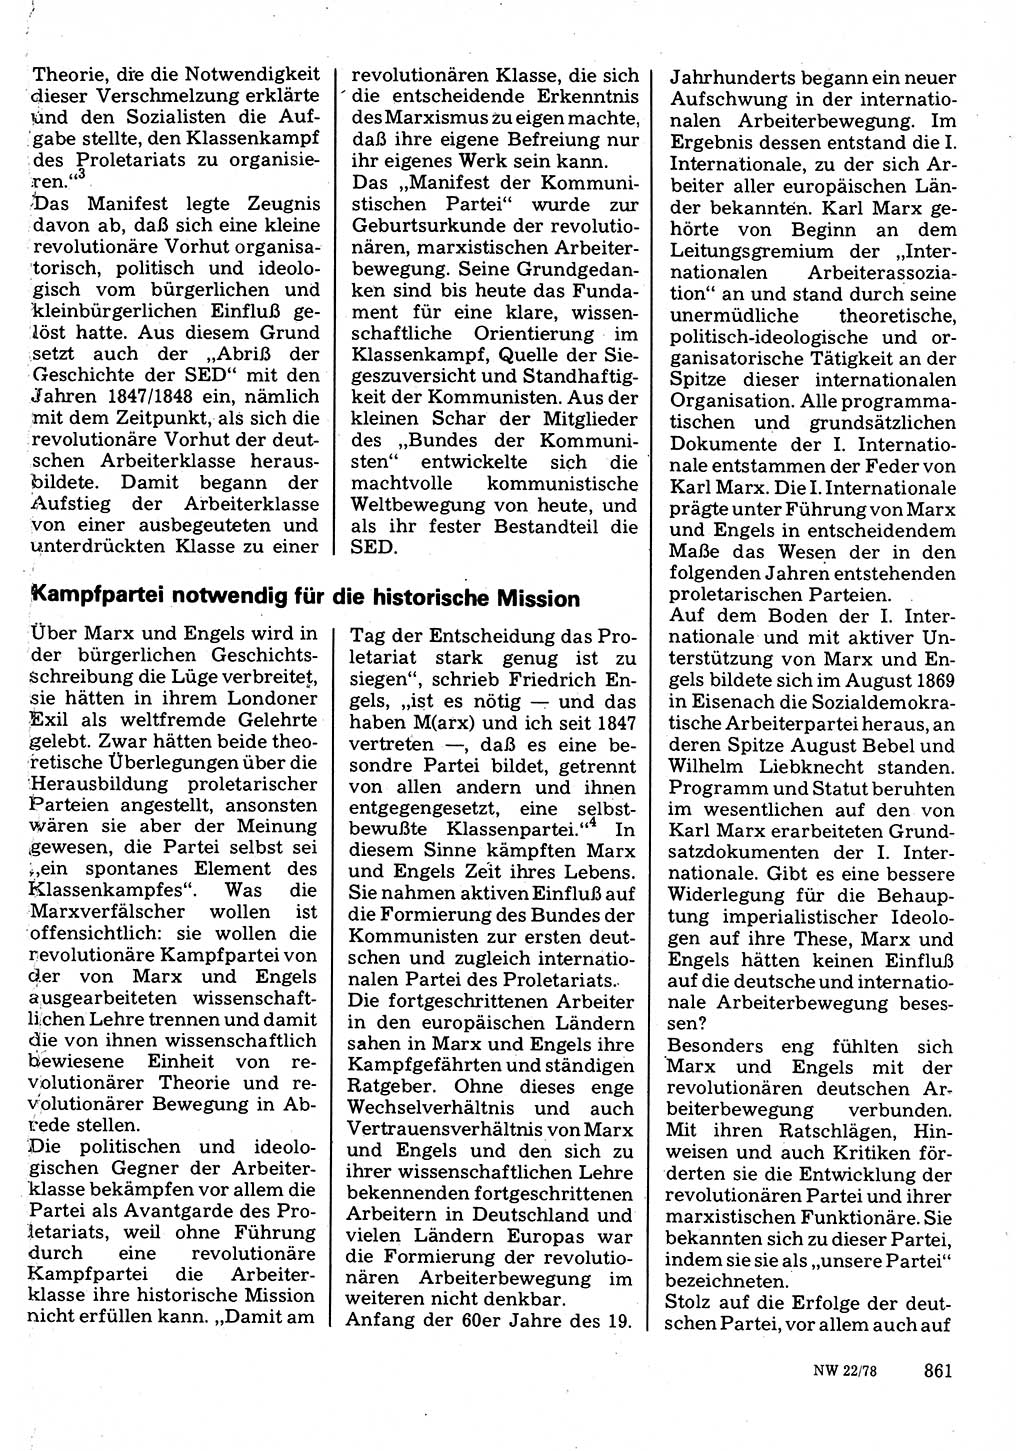 Neuer Weg (NW), Organ des Zentralkomitees (ZK) der SED (Sozialistische Einheitspartei Deutschlands) für Fragen des Parteilebens, 33. Jahrgang [Deutsche Demokratische Republik (DDR)] 1978, Seite 861 (NW ZK SED DDR 1978, S. 861)